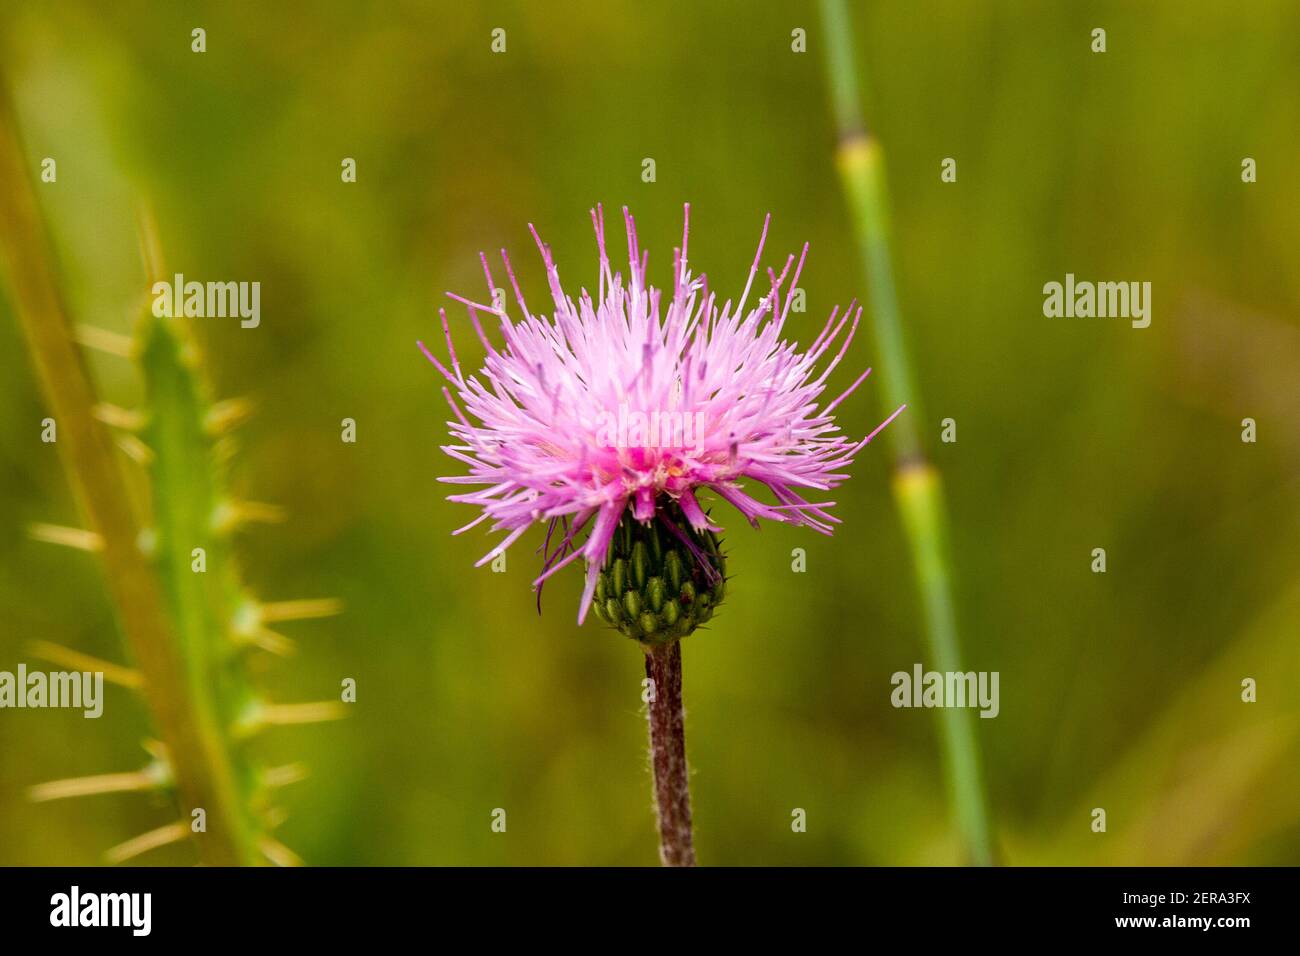 Deatil od eine rosa Distel vor einem verschwommenen grünen Hintergrund Stockfoto